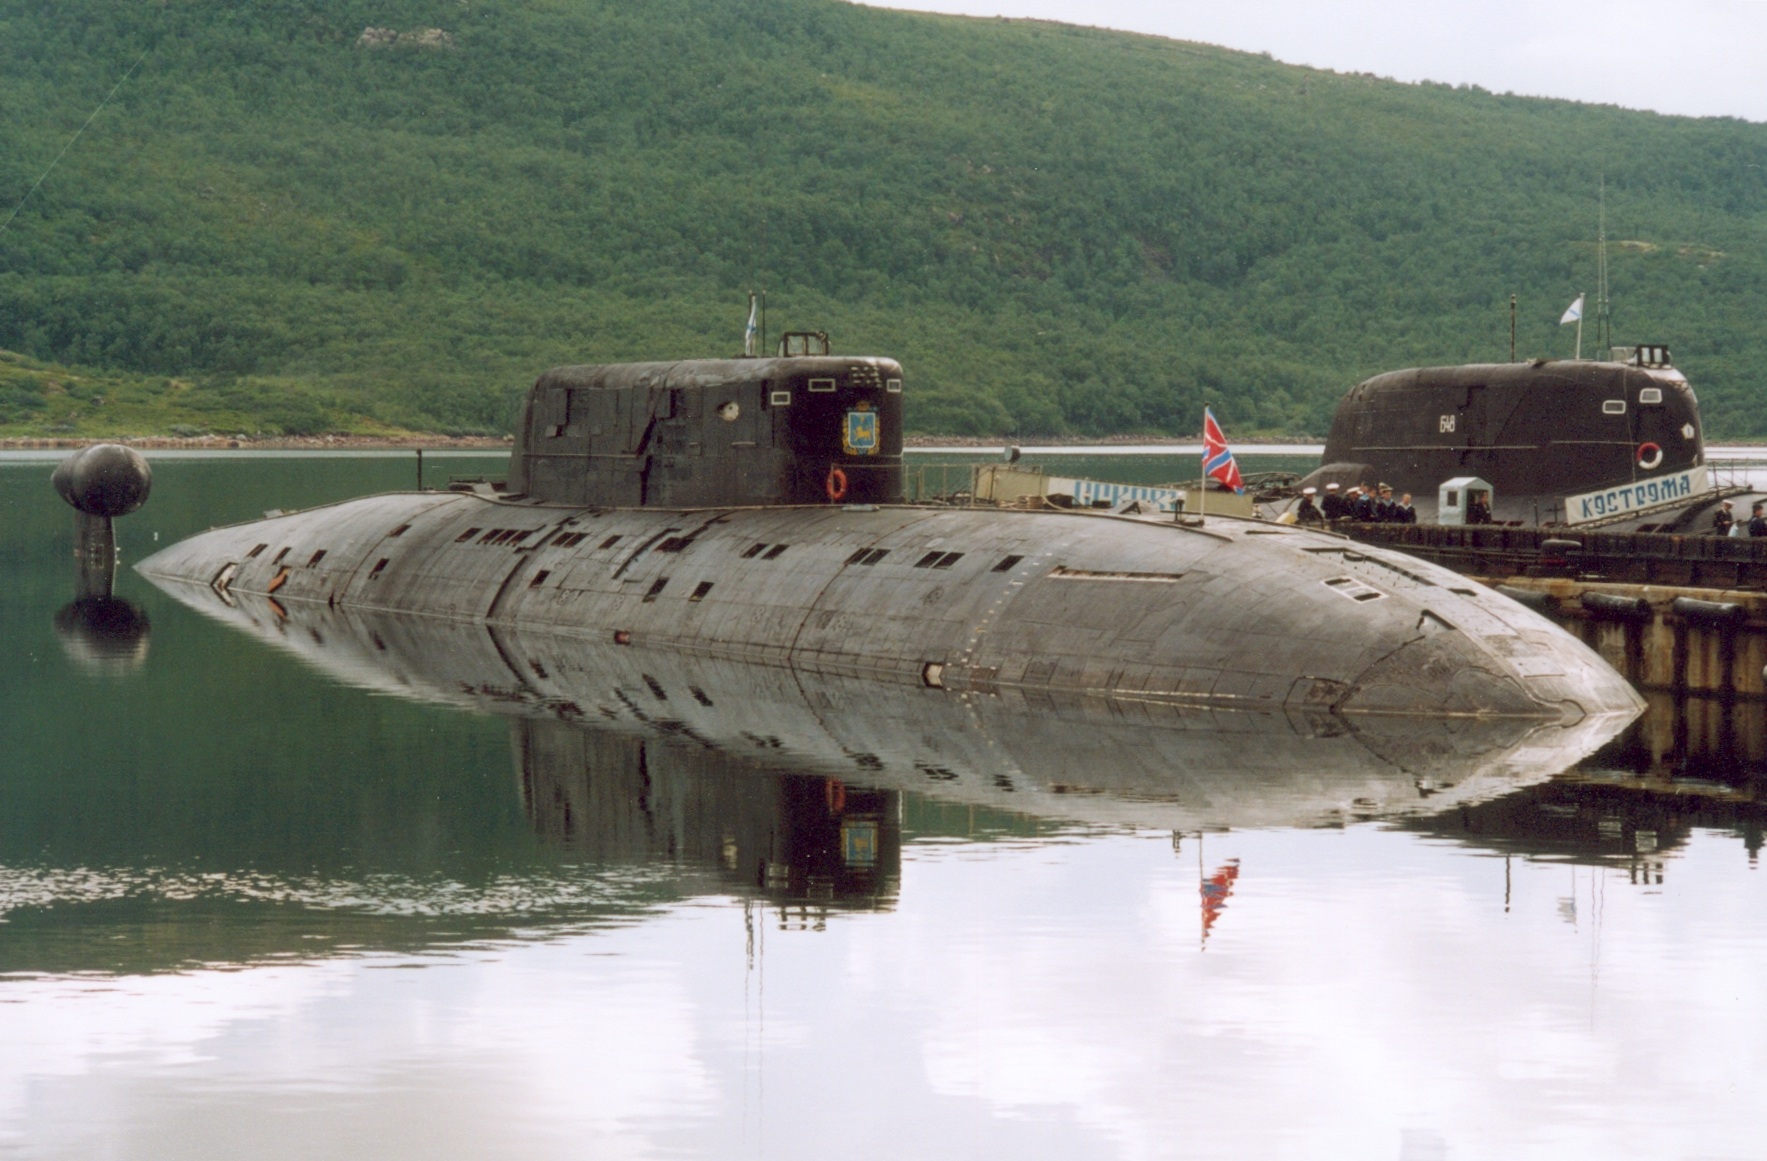 Пл тка. Подводная лодка 945 Барракуда. Подводная лодка Барракуда и Кондор проект 945. Подводные лодки проекта 945а «Кондор». 945а подводная лодка.